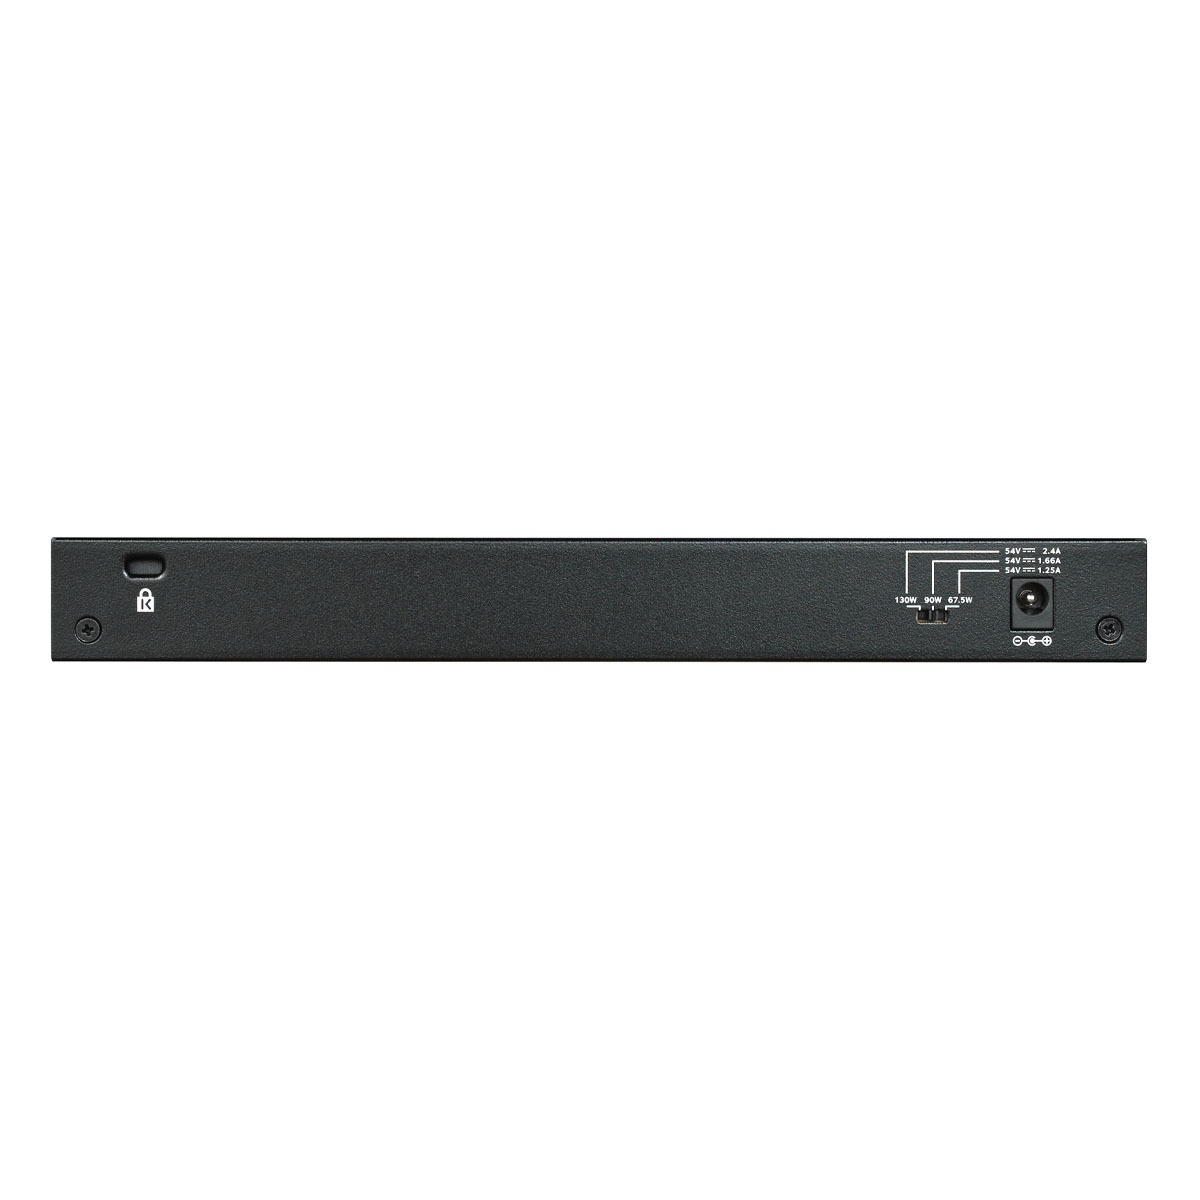 Bild von SOHO GS300 Desktop Gigabit Switch, 8x RJ-45, PoE+ (GS308PP-100)